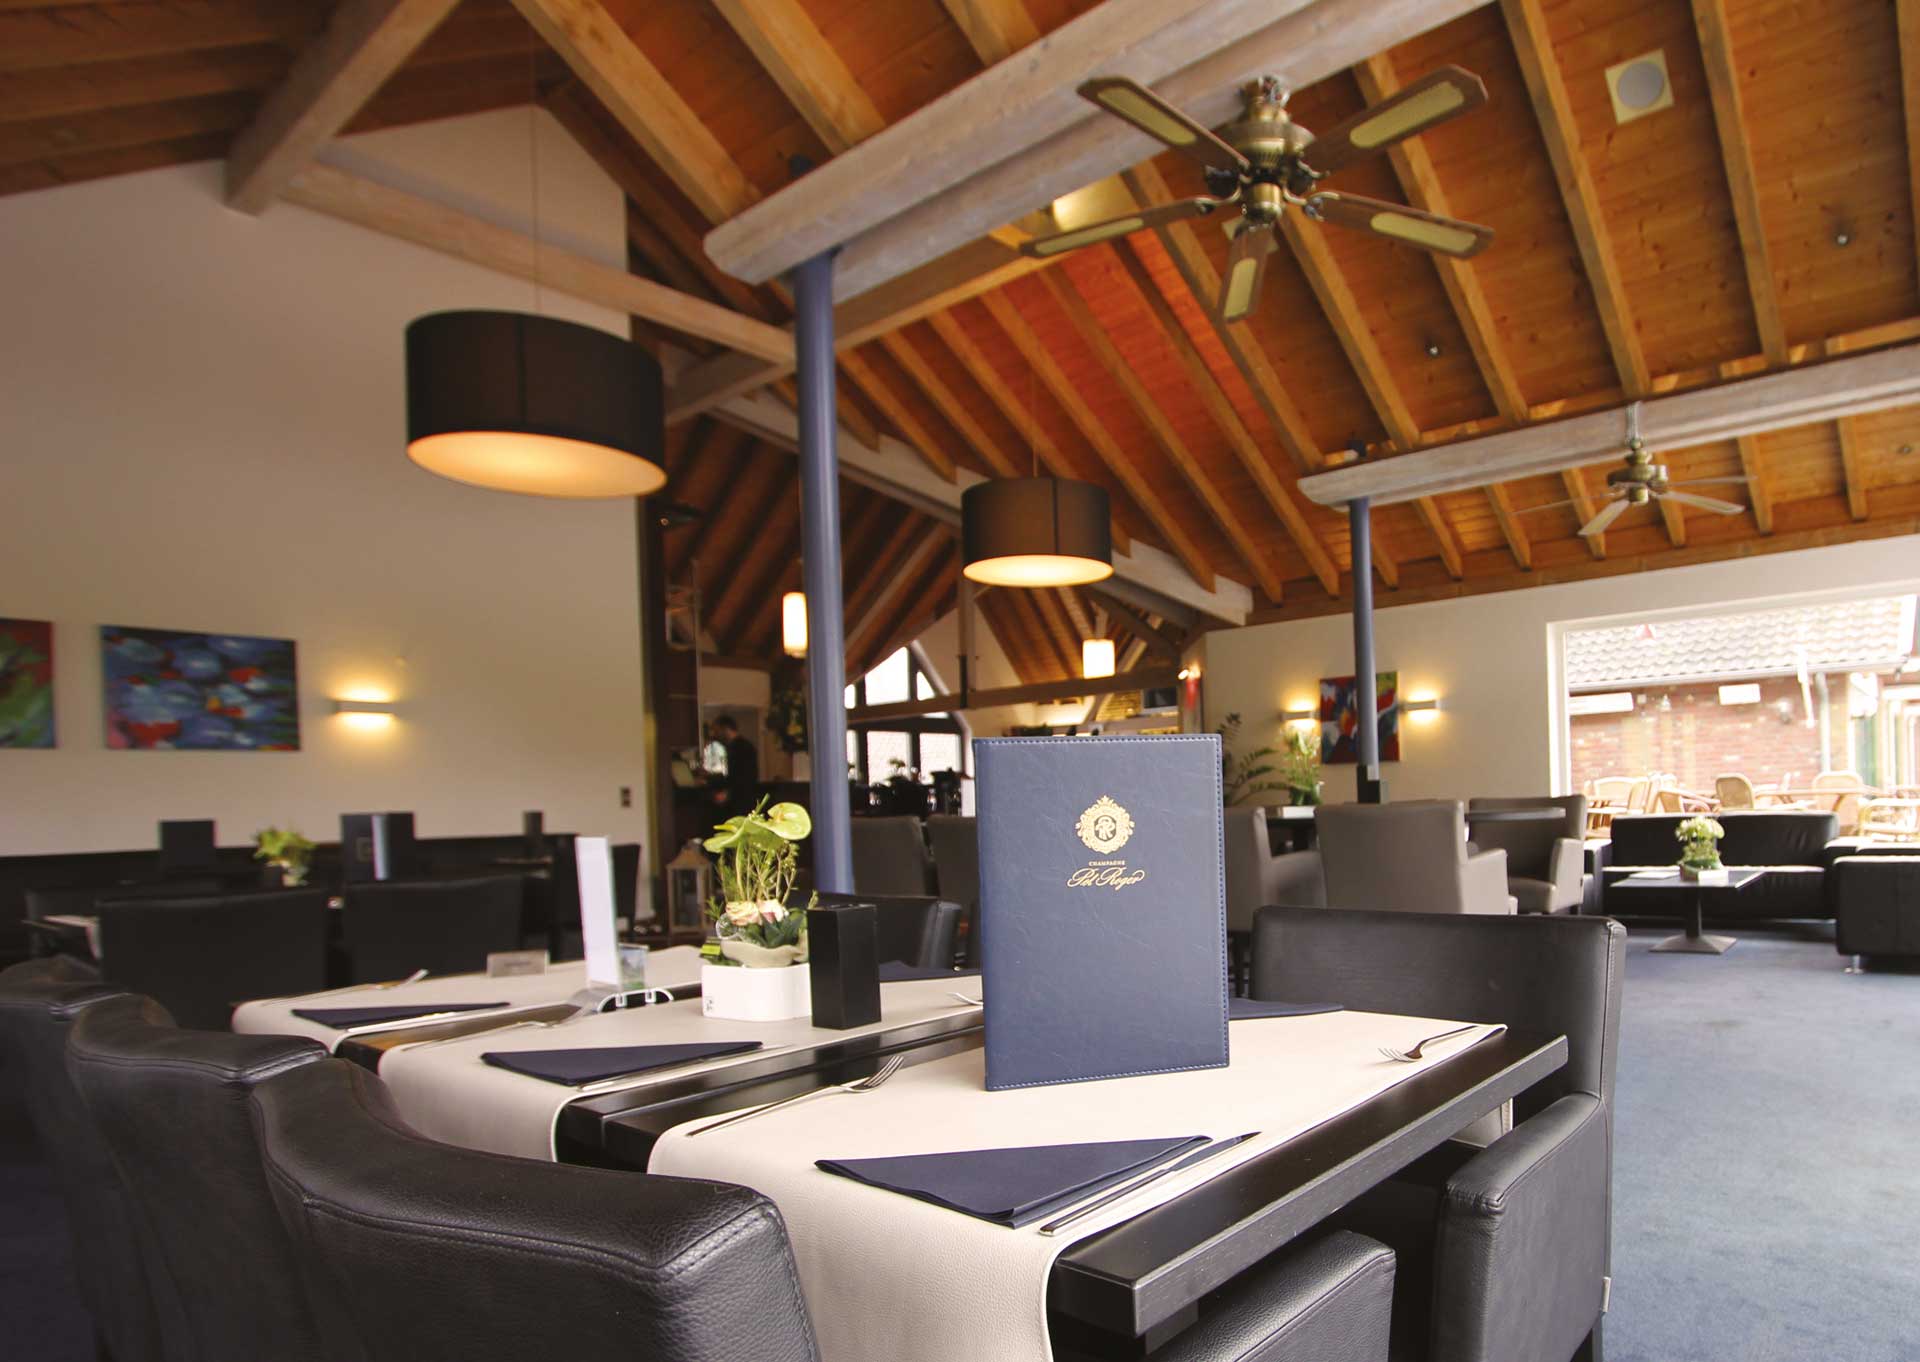 Golf-reizen-Golf-Expedition-België-Regio-Luik-Golf-hotel-Henri-Chapelle-restaurant